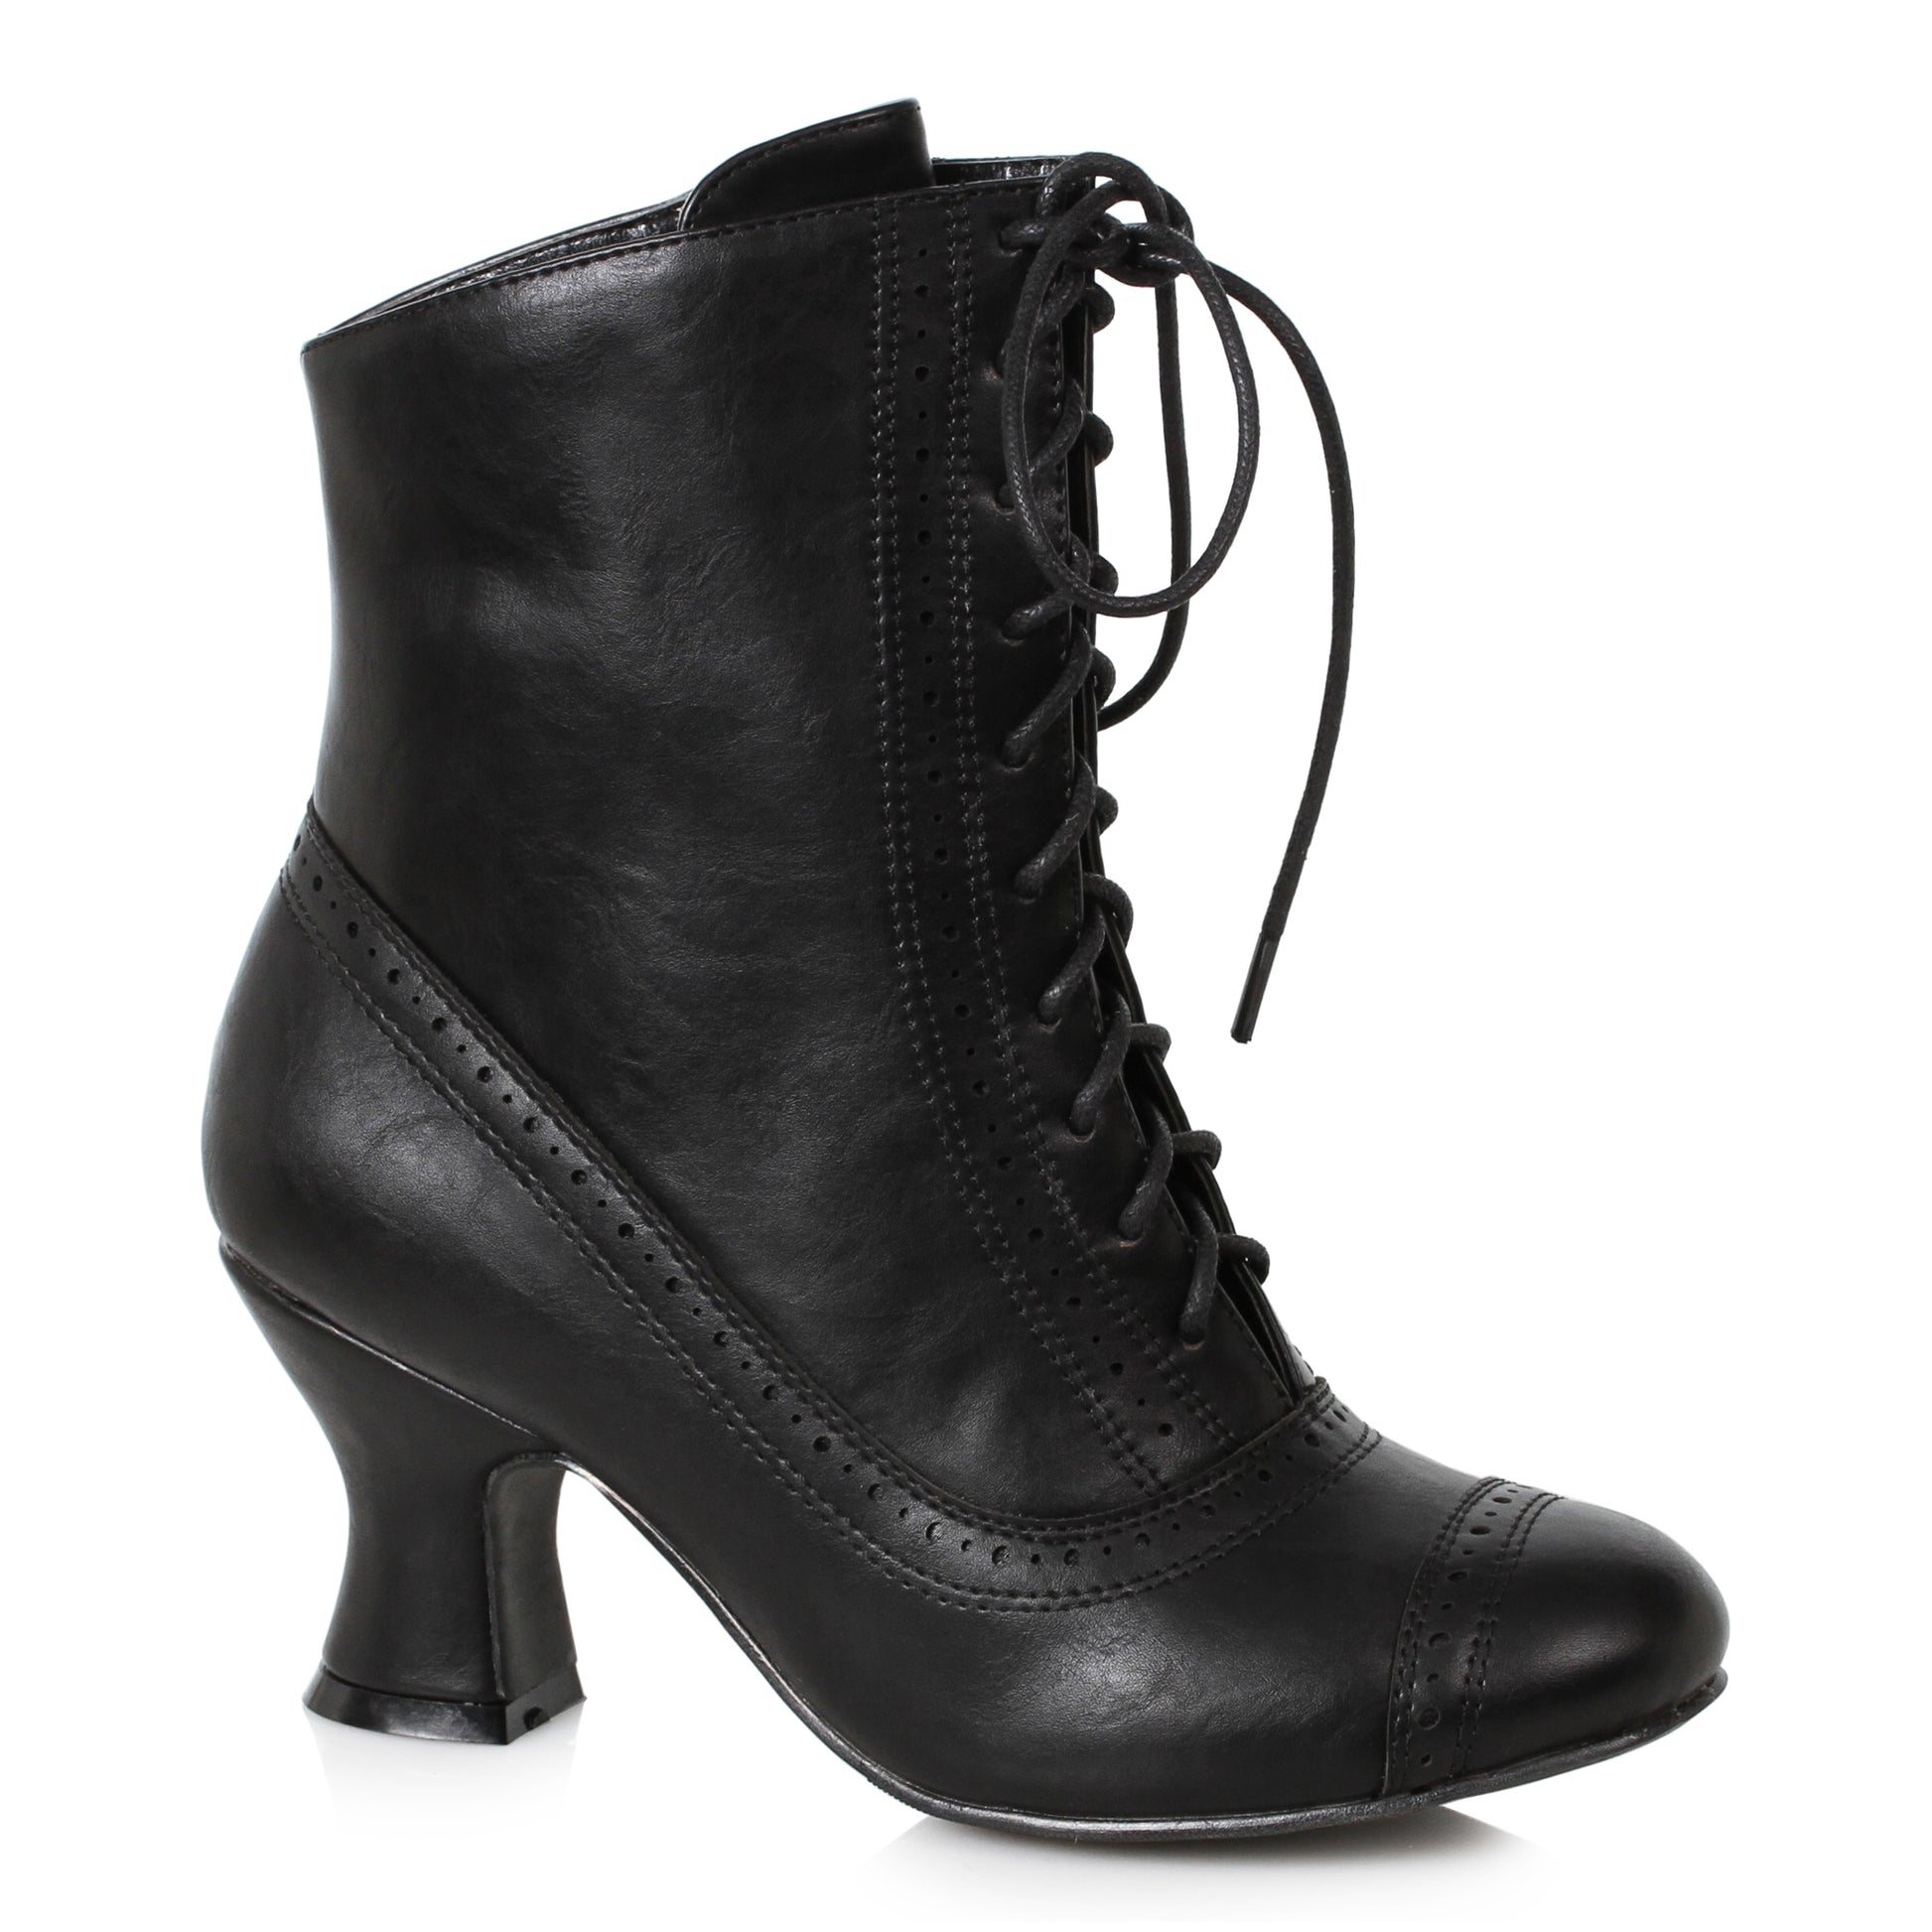 253-SARAH Ellie Shoes 2.5" Heel Victorian Bootie ANKLE BOOT 2 INCH HEEL